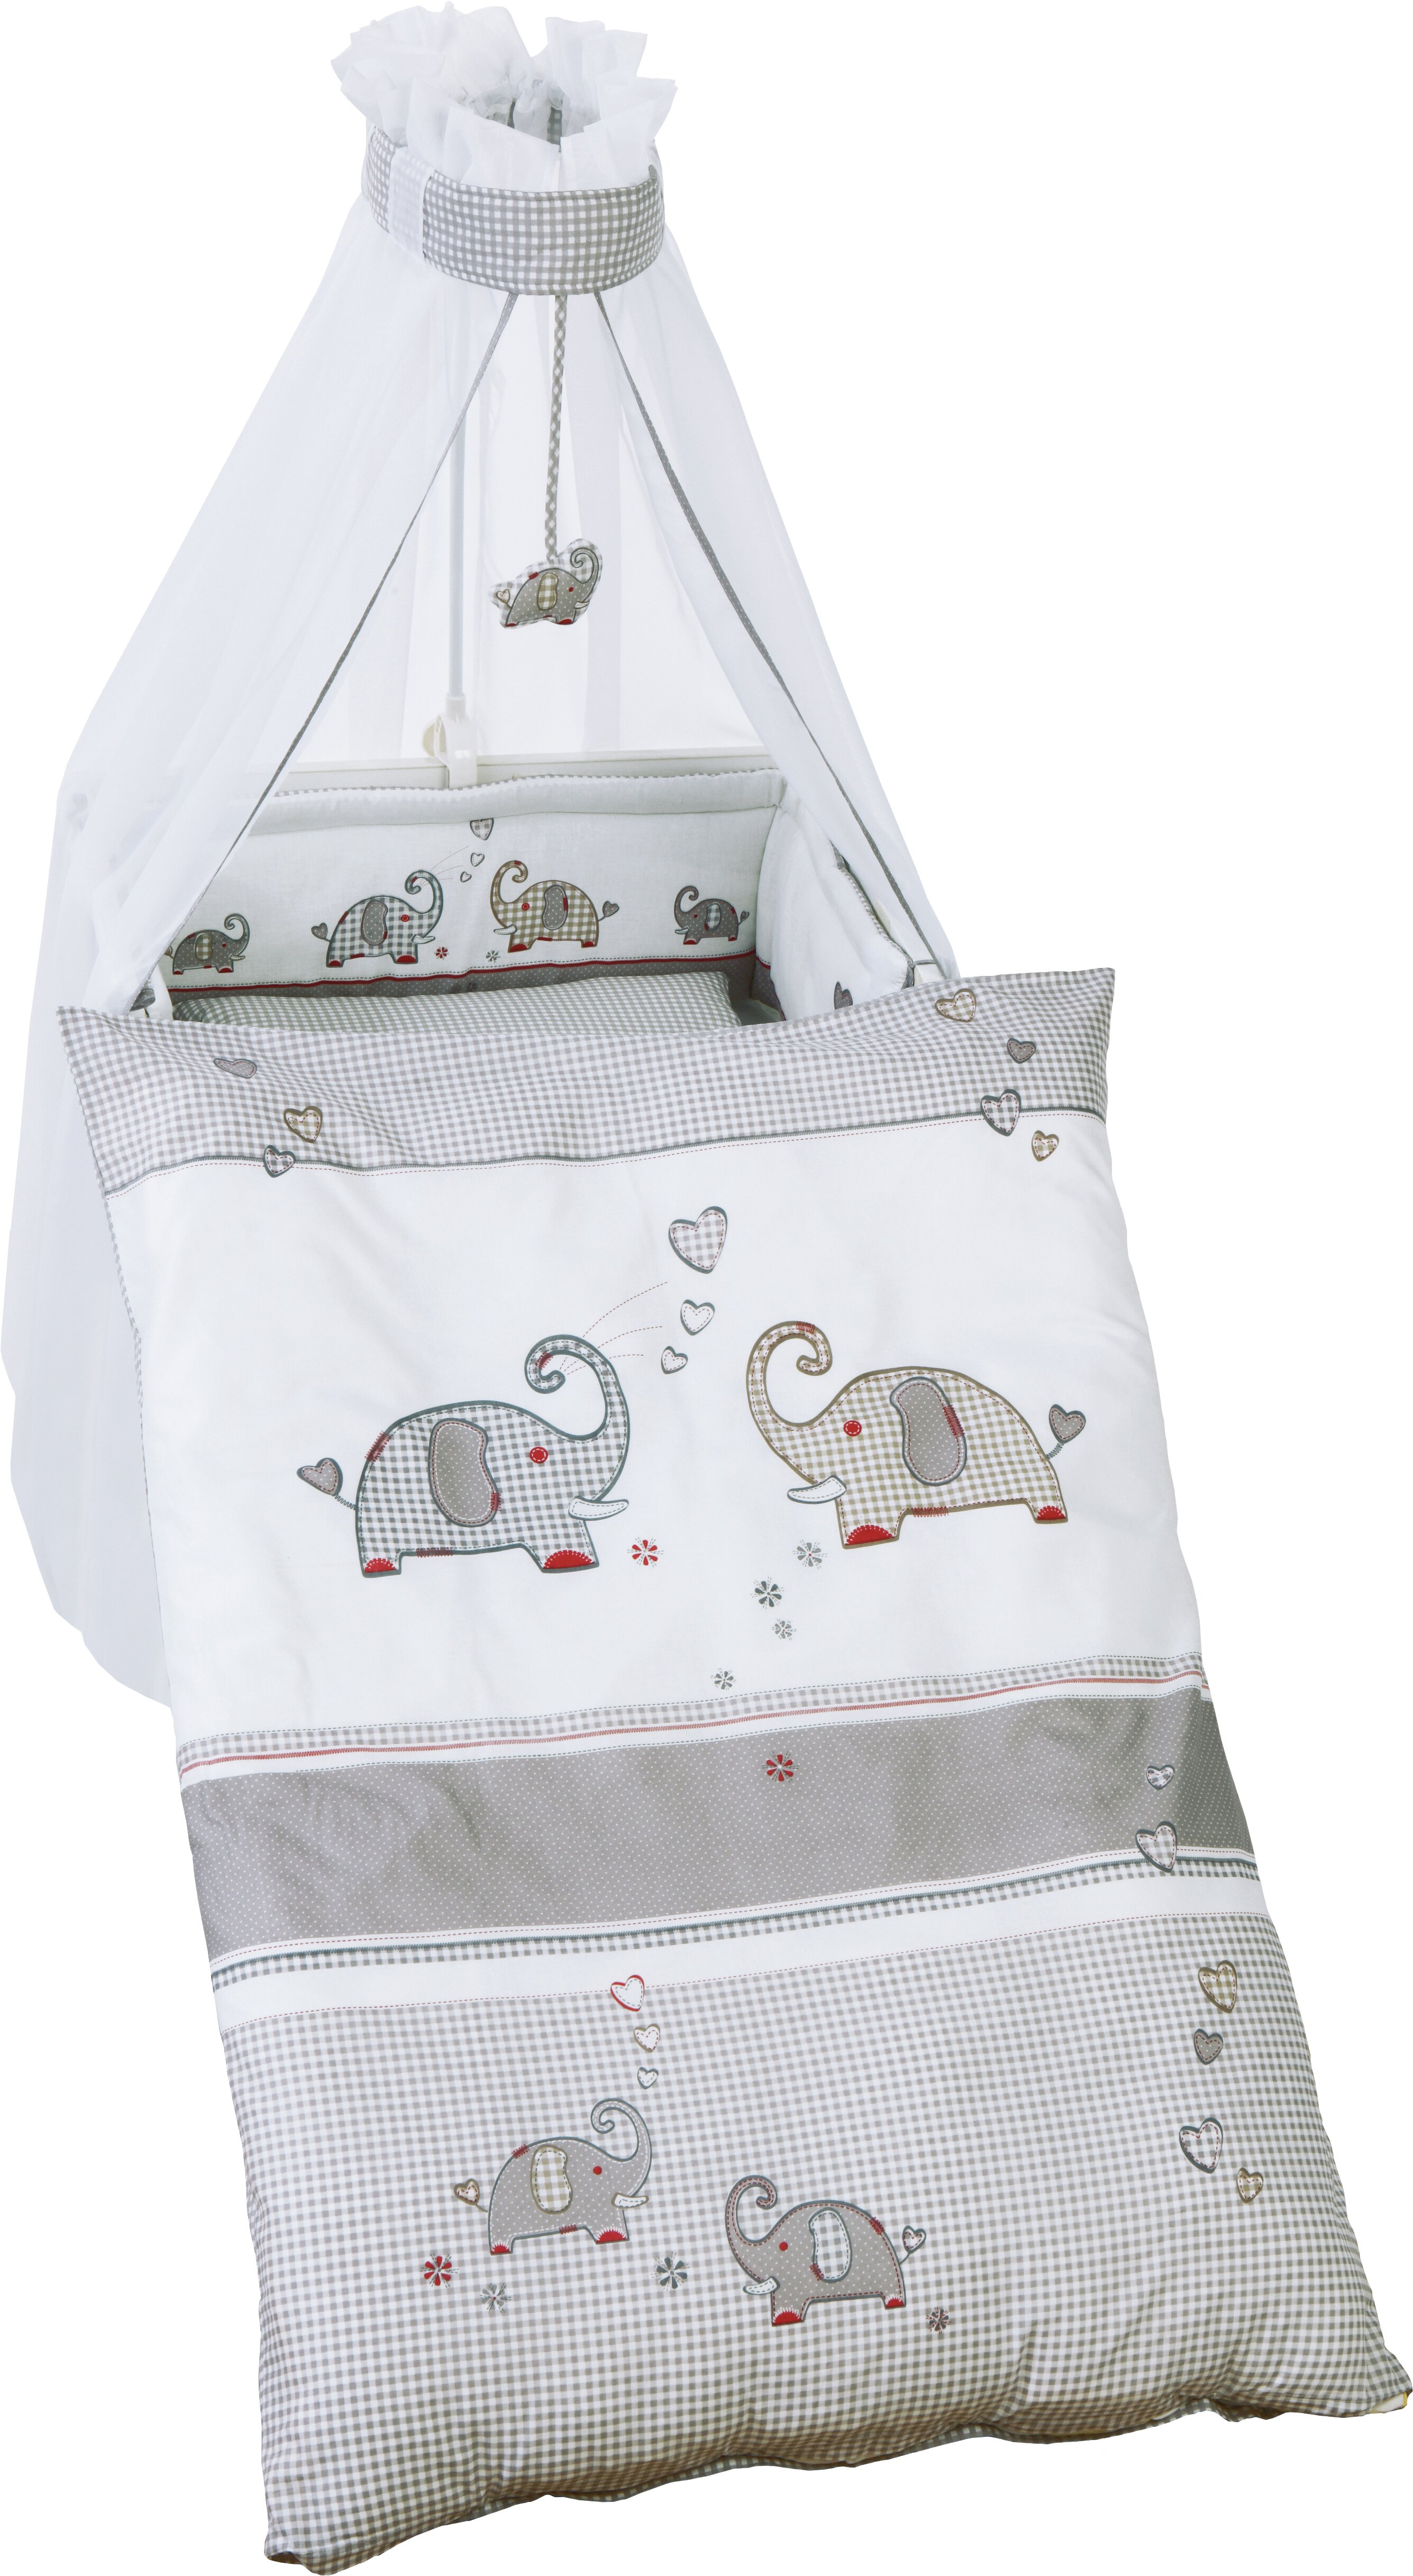 Nursery Baby Bedding Set-Fit Cot 120X60-COT lit 140X70CM 3/5 pcs SET-50 Designs 